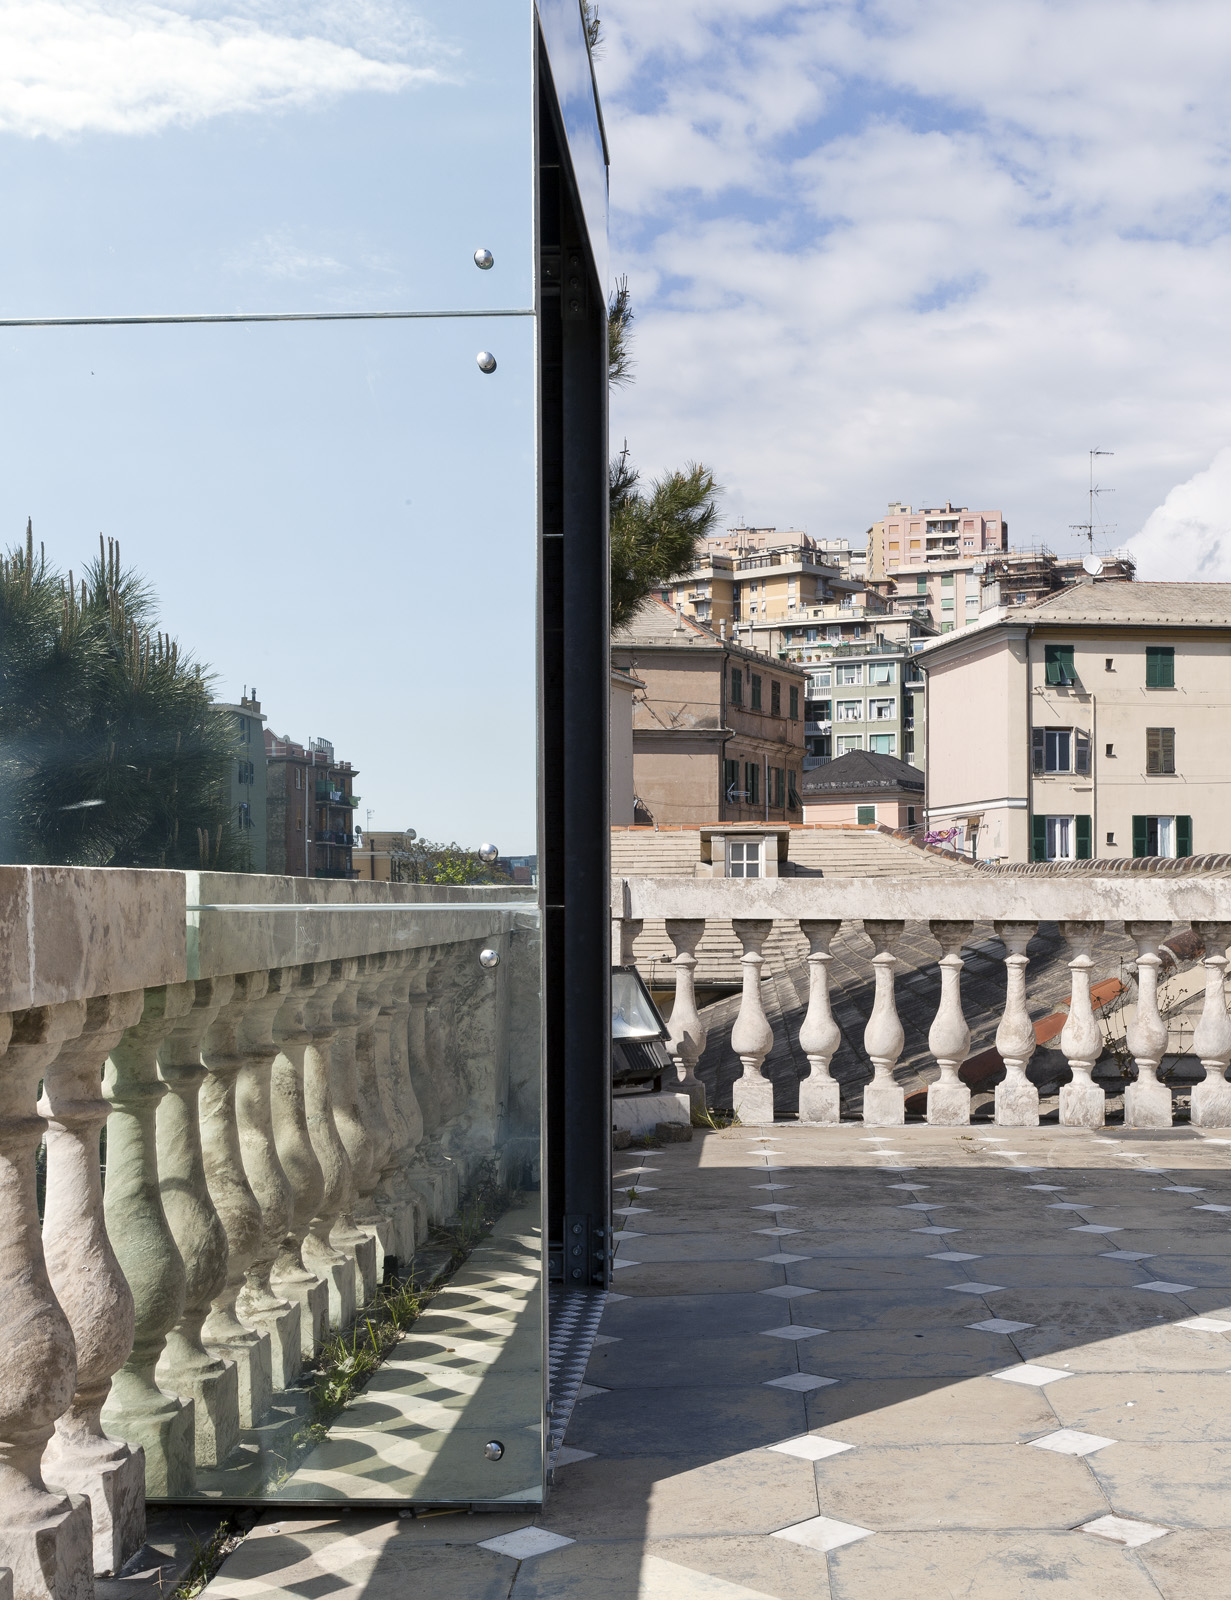 Villa Bombrini Arch. Scelsi - Andrea Bosio